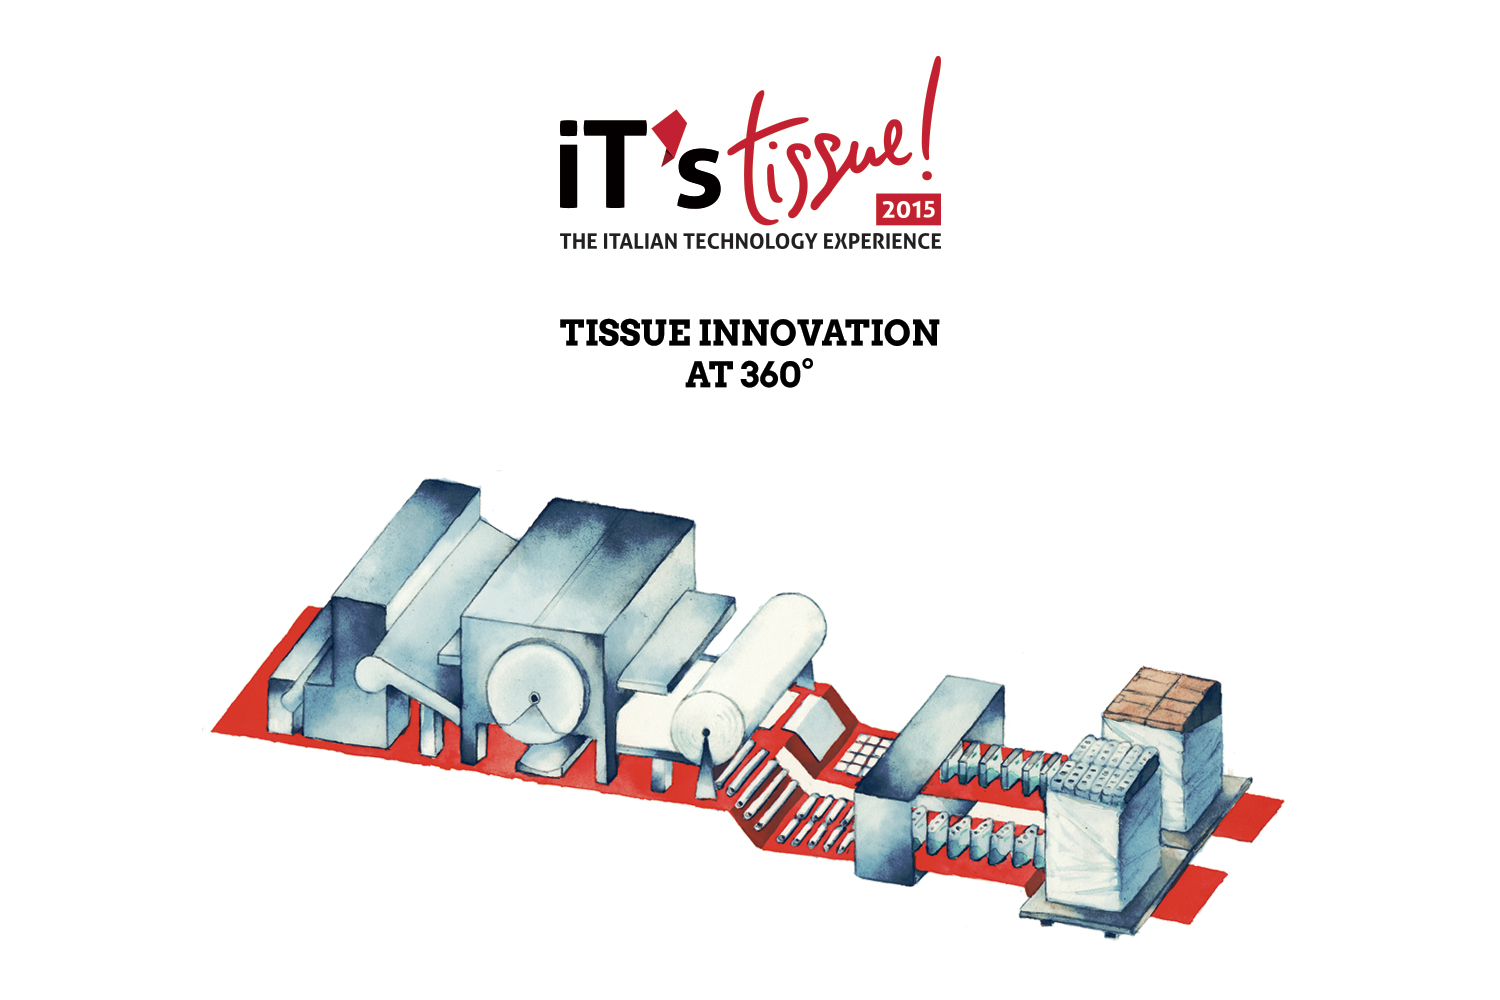 Torna iT’sTissue: a Lucca dal 21 al 28 Giugno la seconda edizione dell’evento unico al mondo per le innovazioni tecnologiche del settore del Tissue